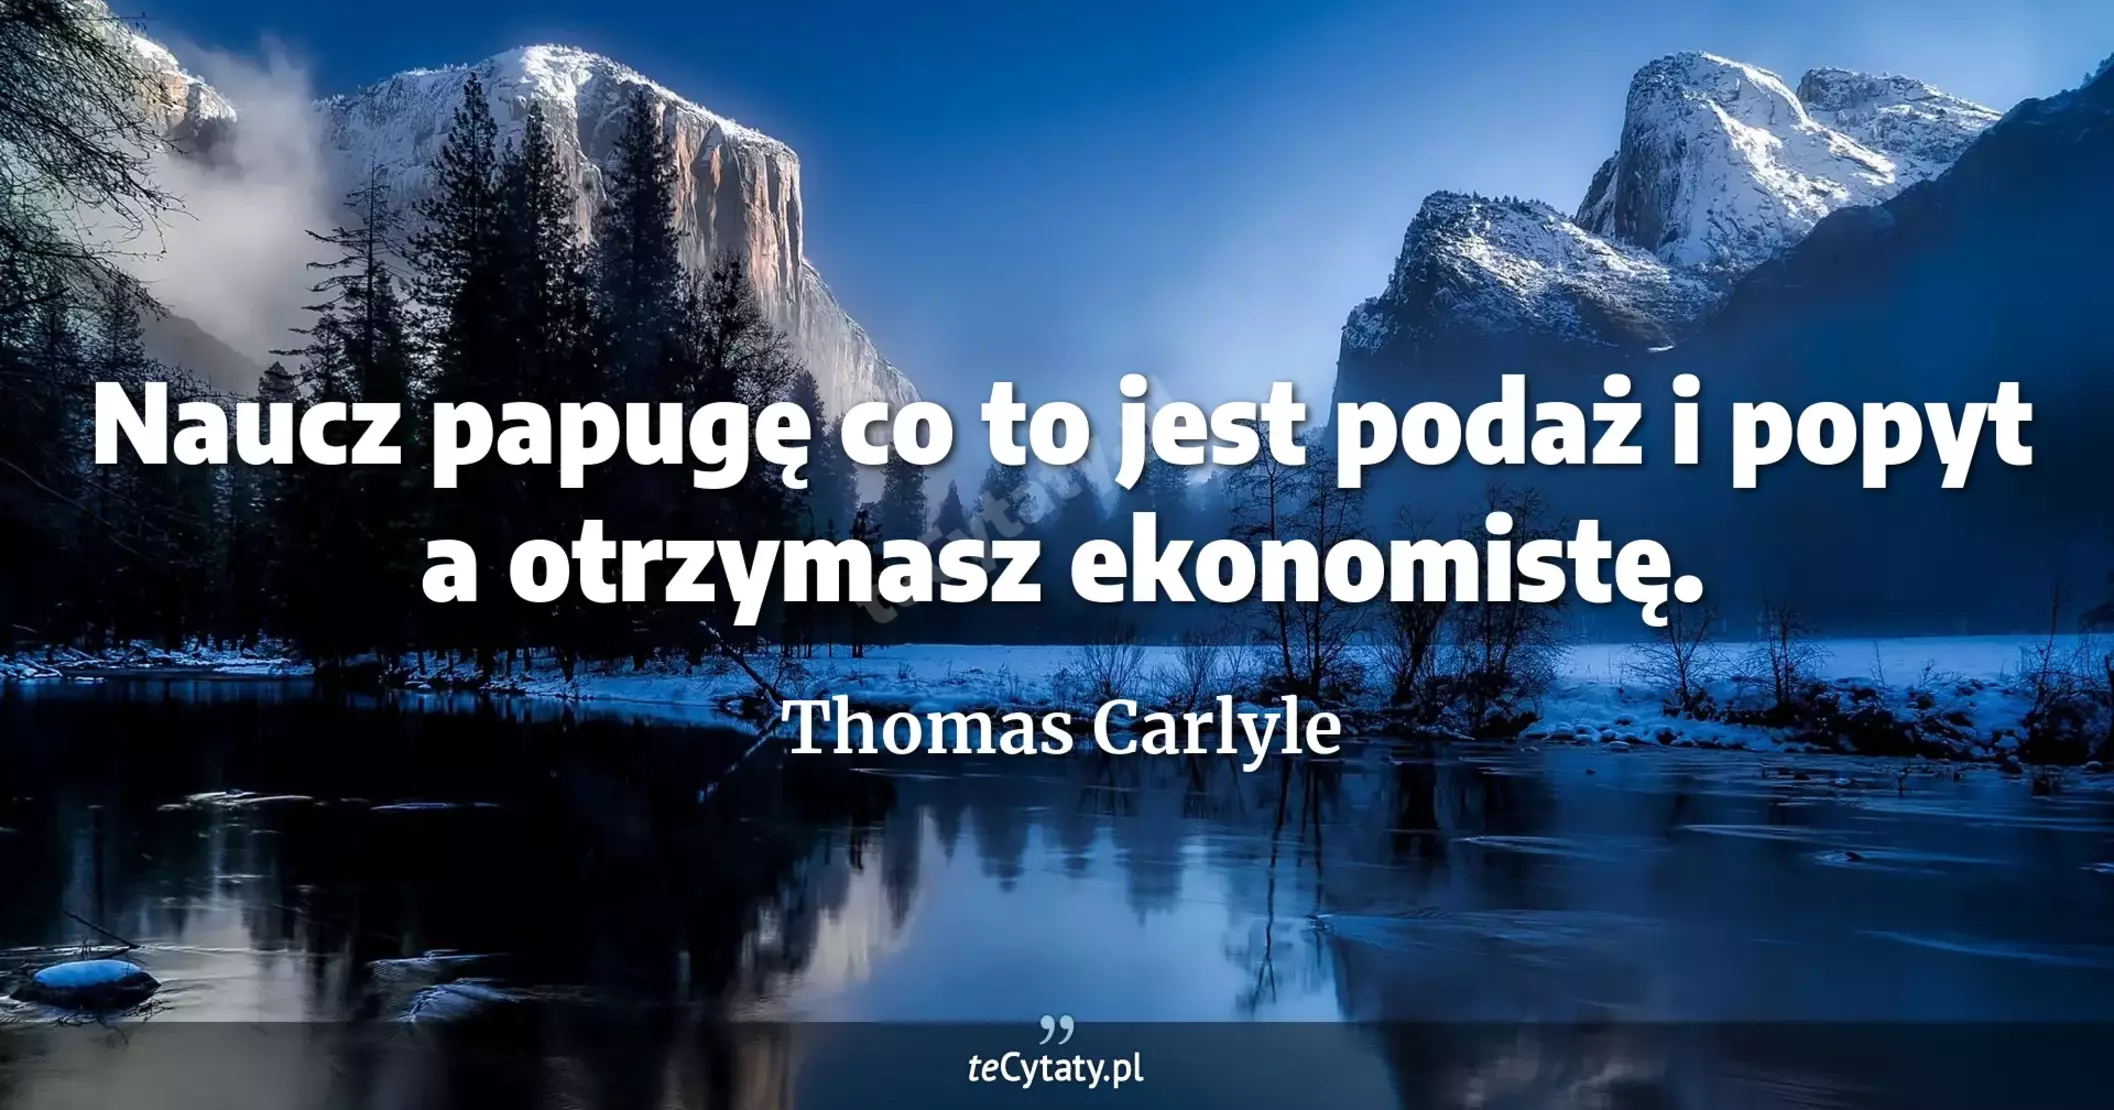 Naucz papugę co to jest podaż i popyt a otrzymasz ekonomistę. - Thomas Carlyle